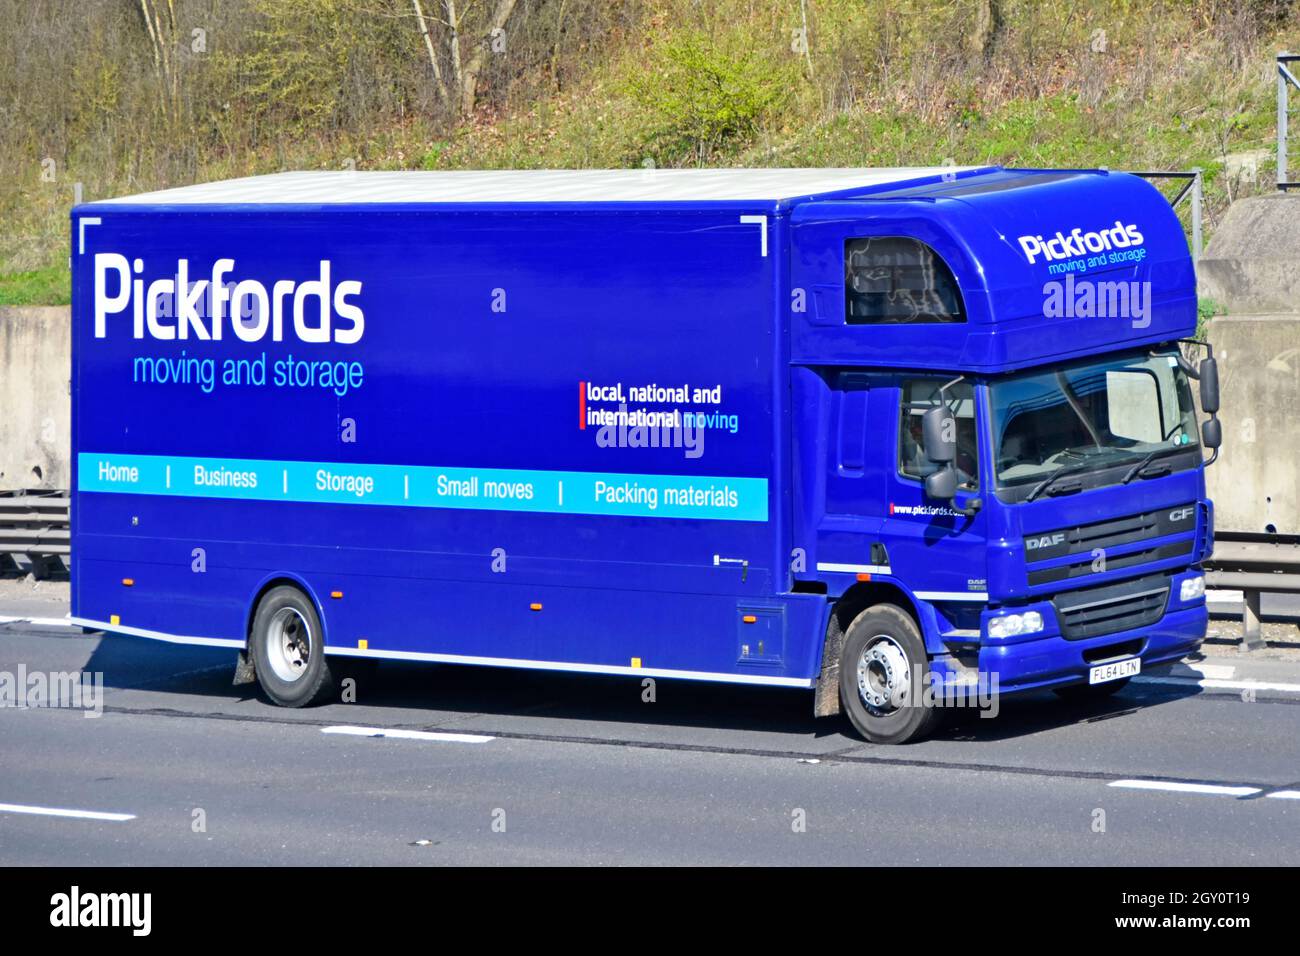 Primo piano branding e pubblicità sulla vista laterale e anteriore del corpo rigido blu Pickfords rimozione stoccaggio business camion furgone e conducente autostrada uk strada Foto Stock